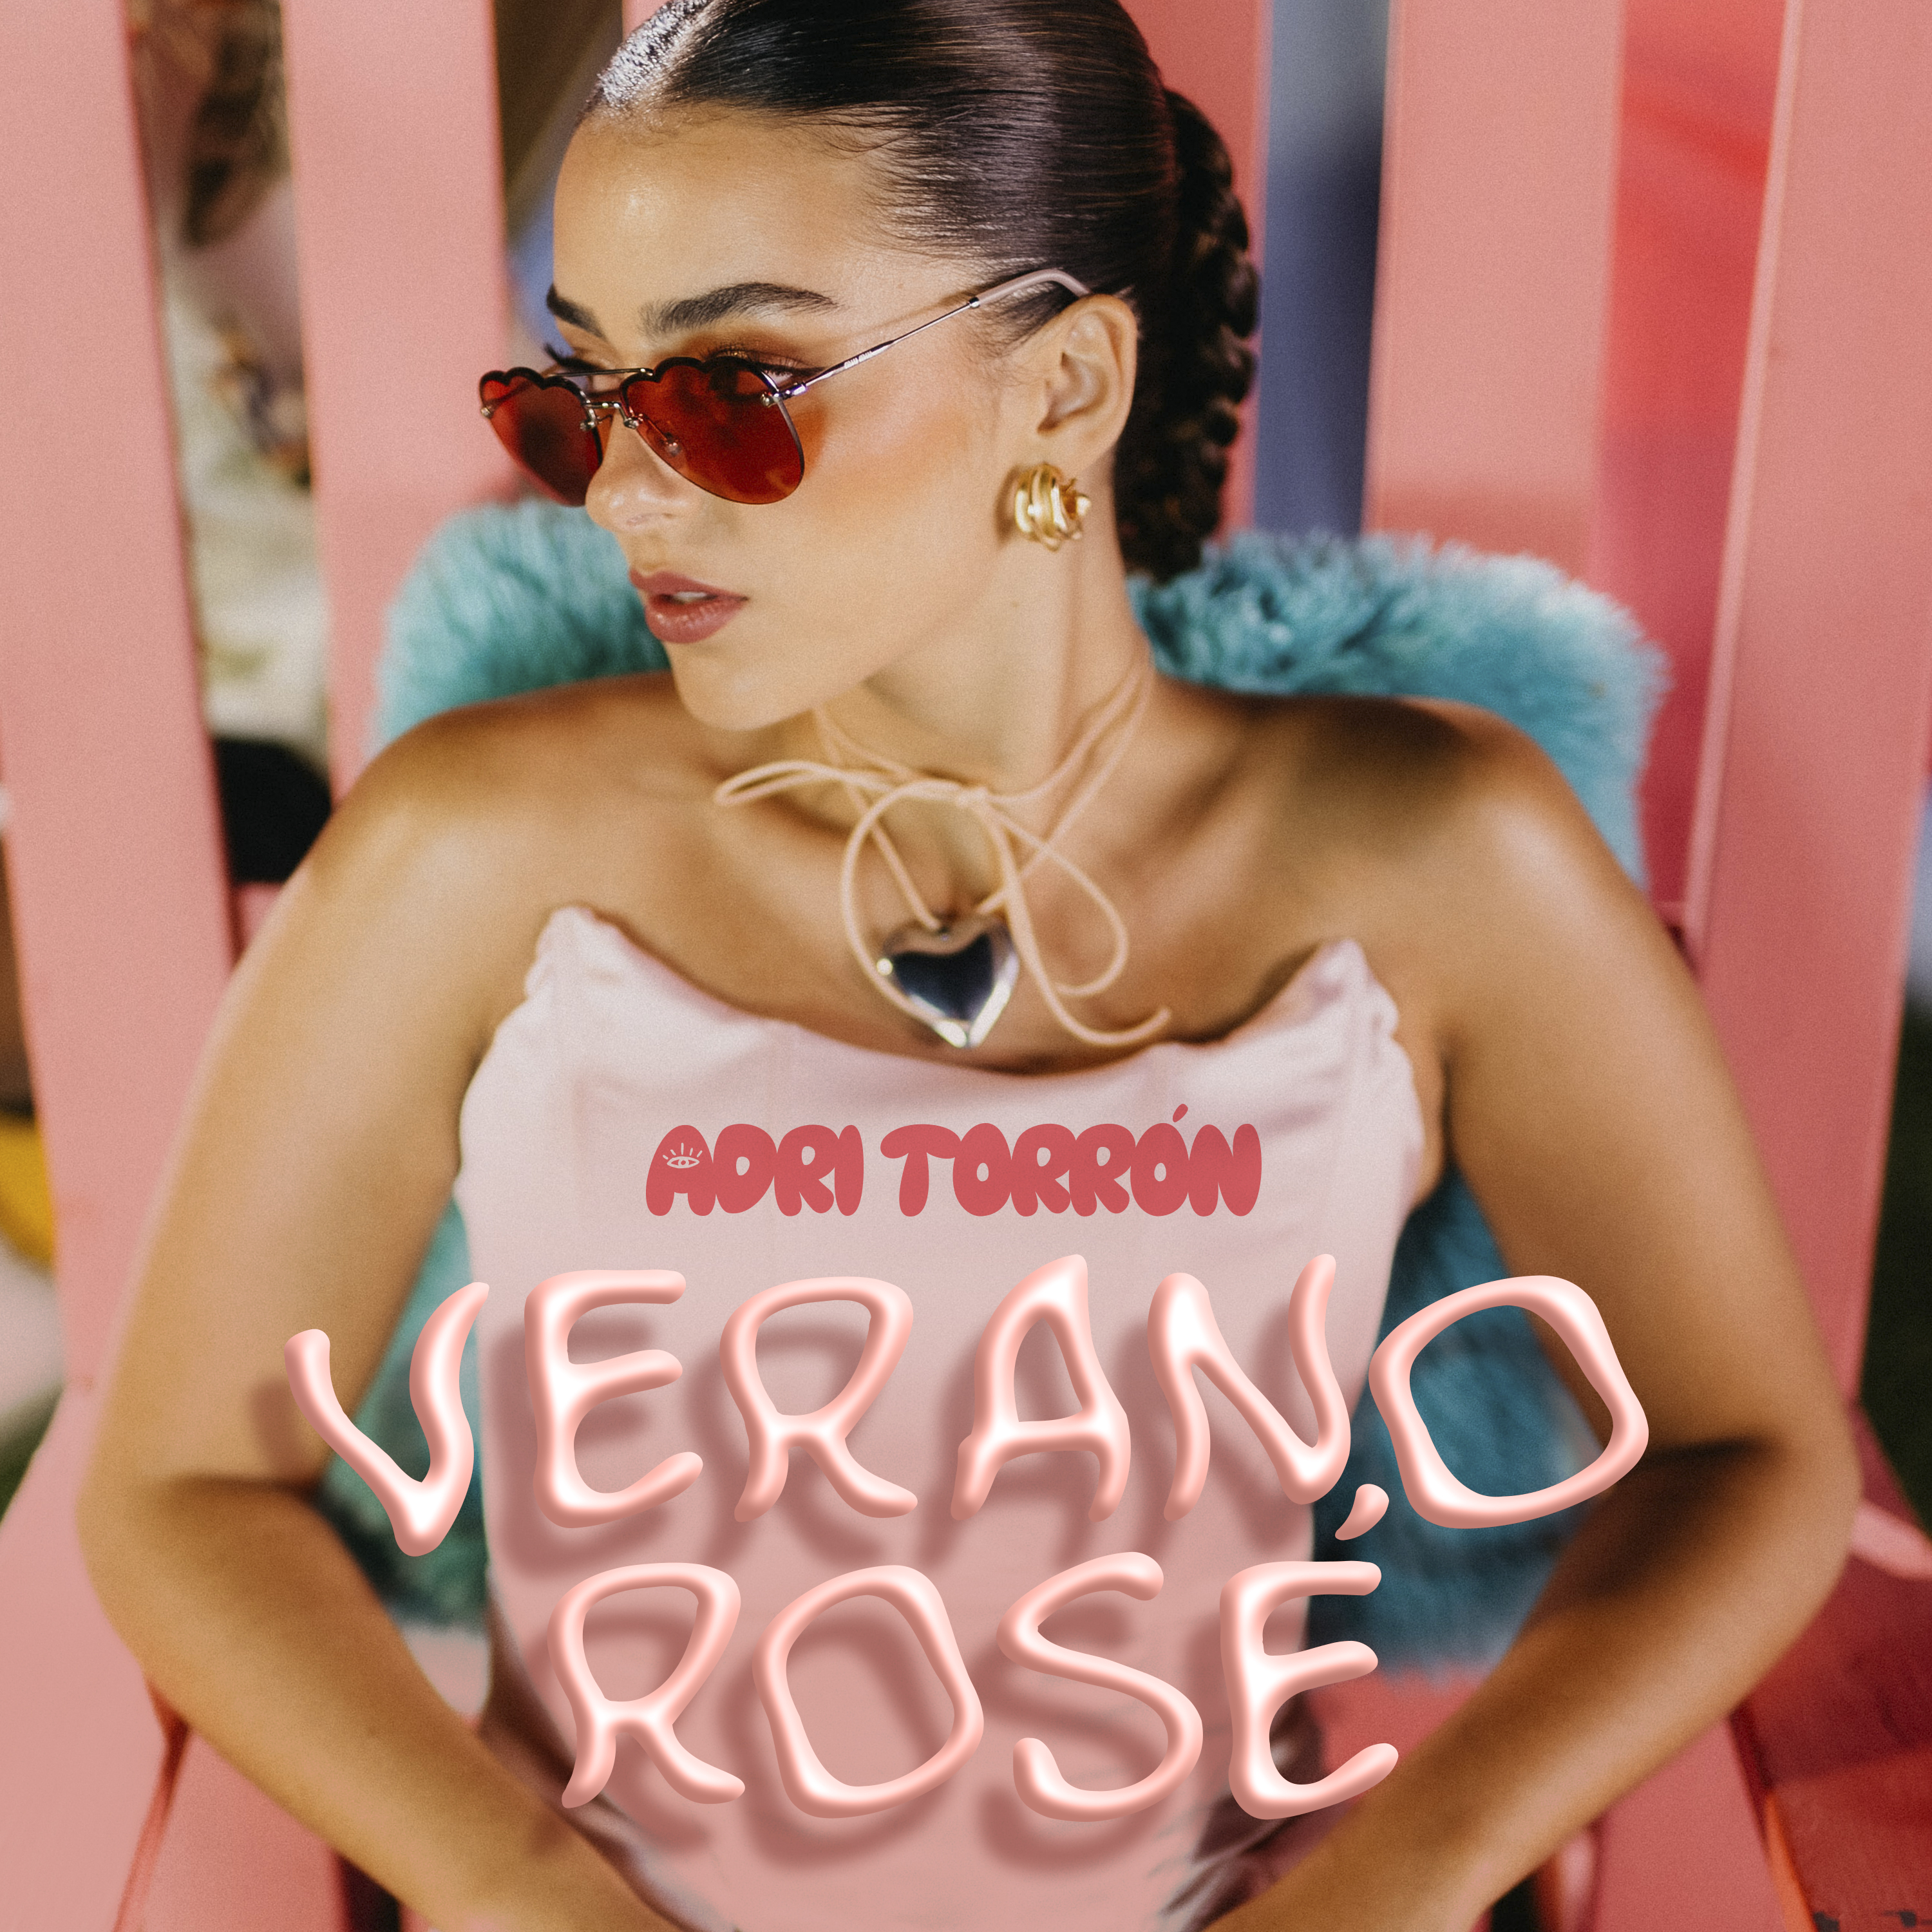 Adri estrena su más reciente trabajo “Verano rosé” de la mano de Warner Music Latina